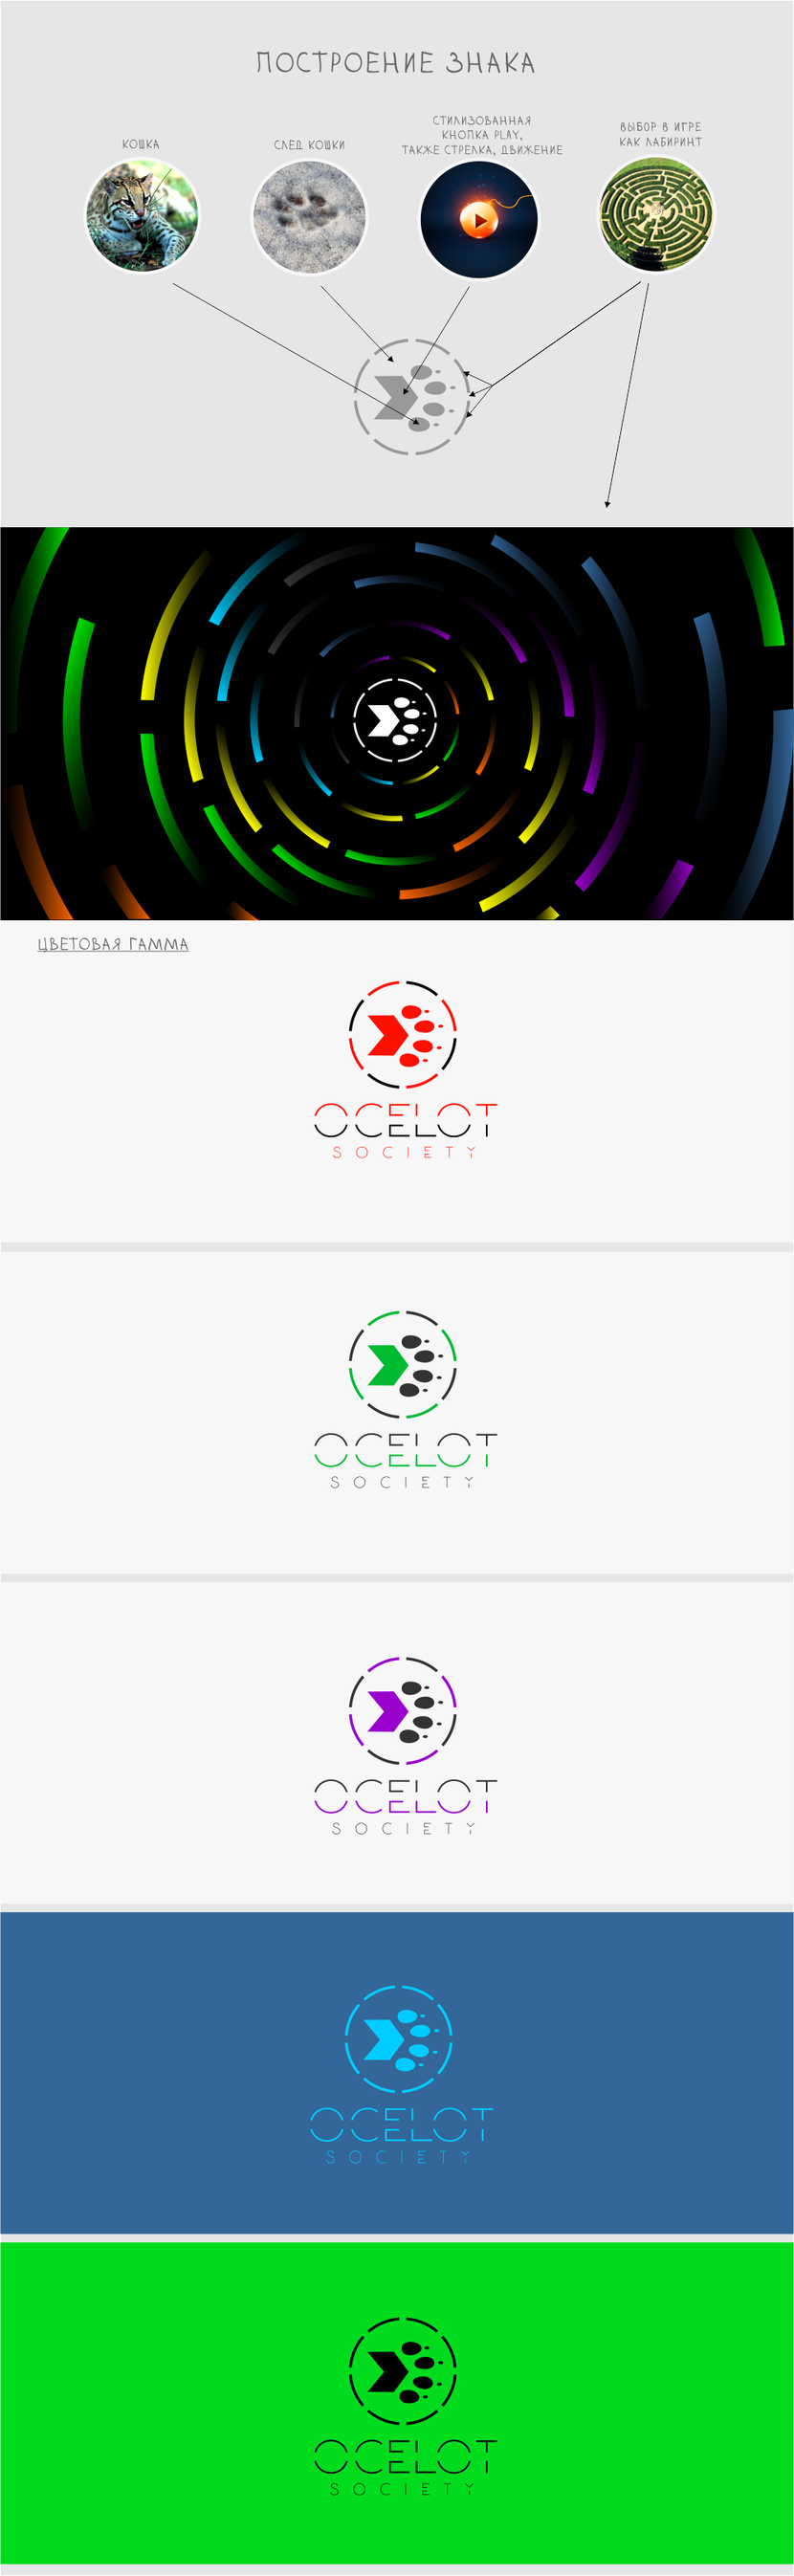 Новый концепт. - Логотип для парижской студии разработки видеоигр Ocelot Society